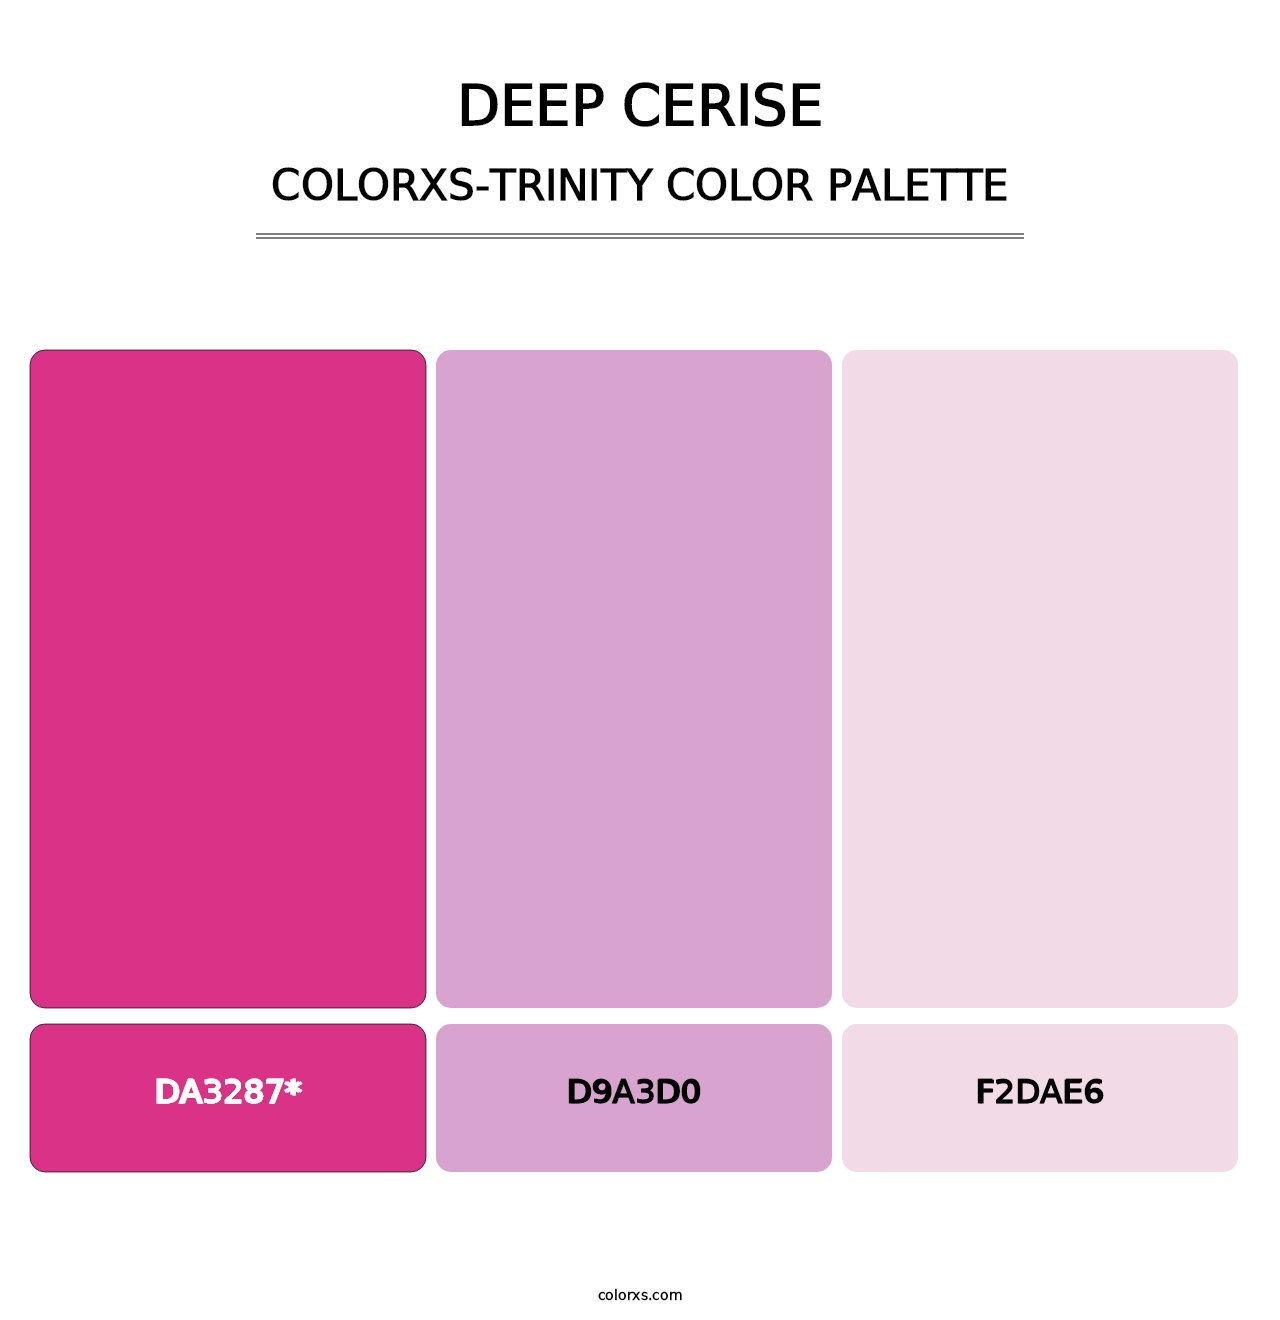 Deep Cerise - Colorxs Trinity Palette